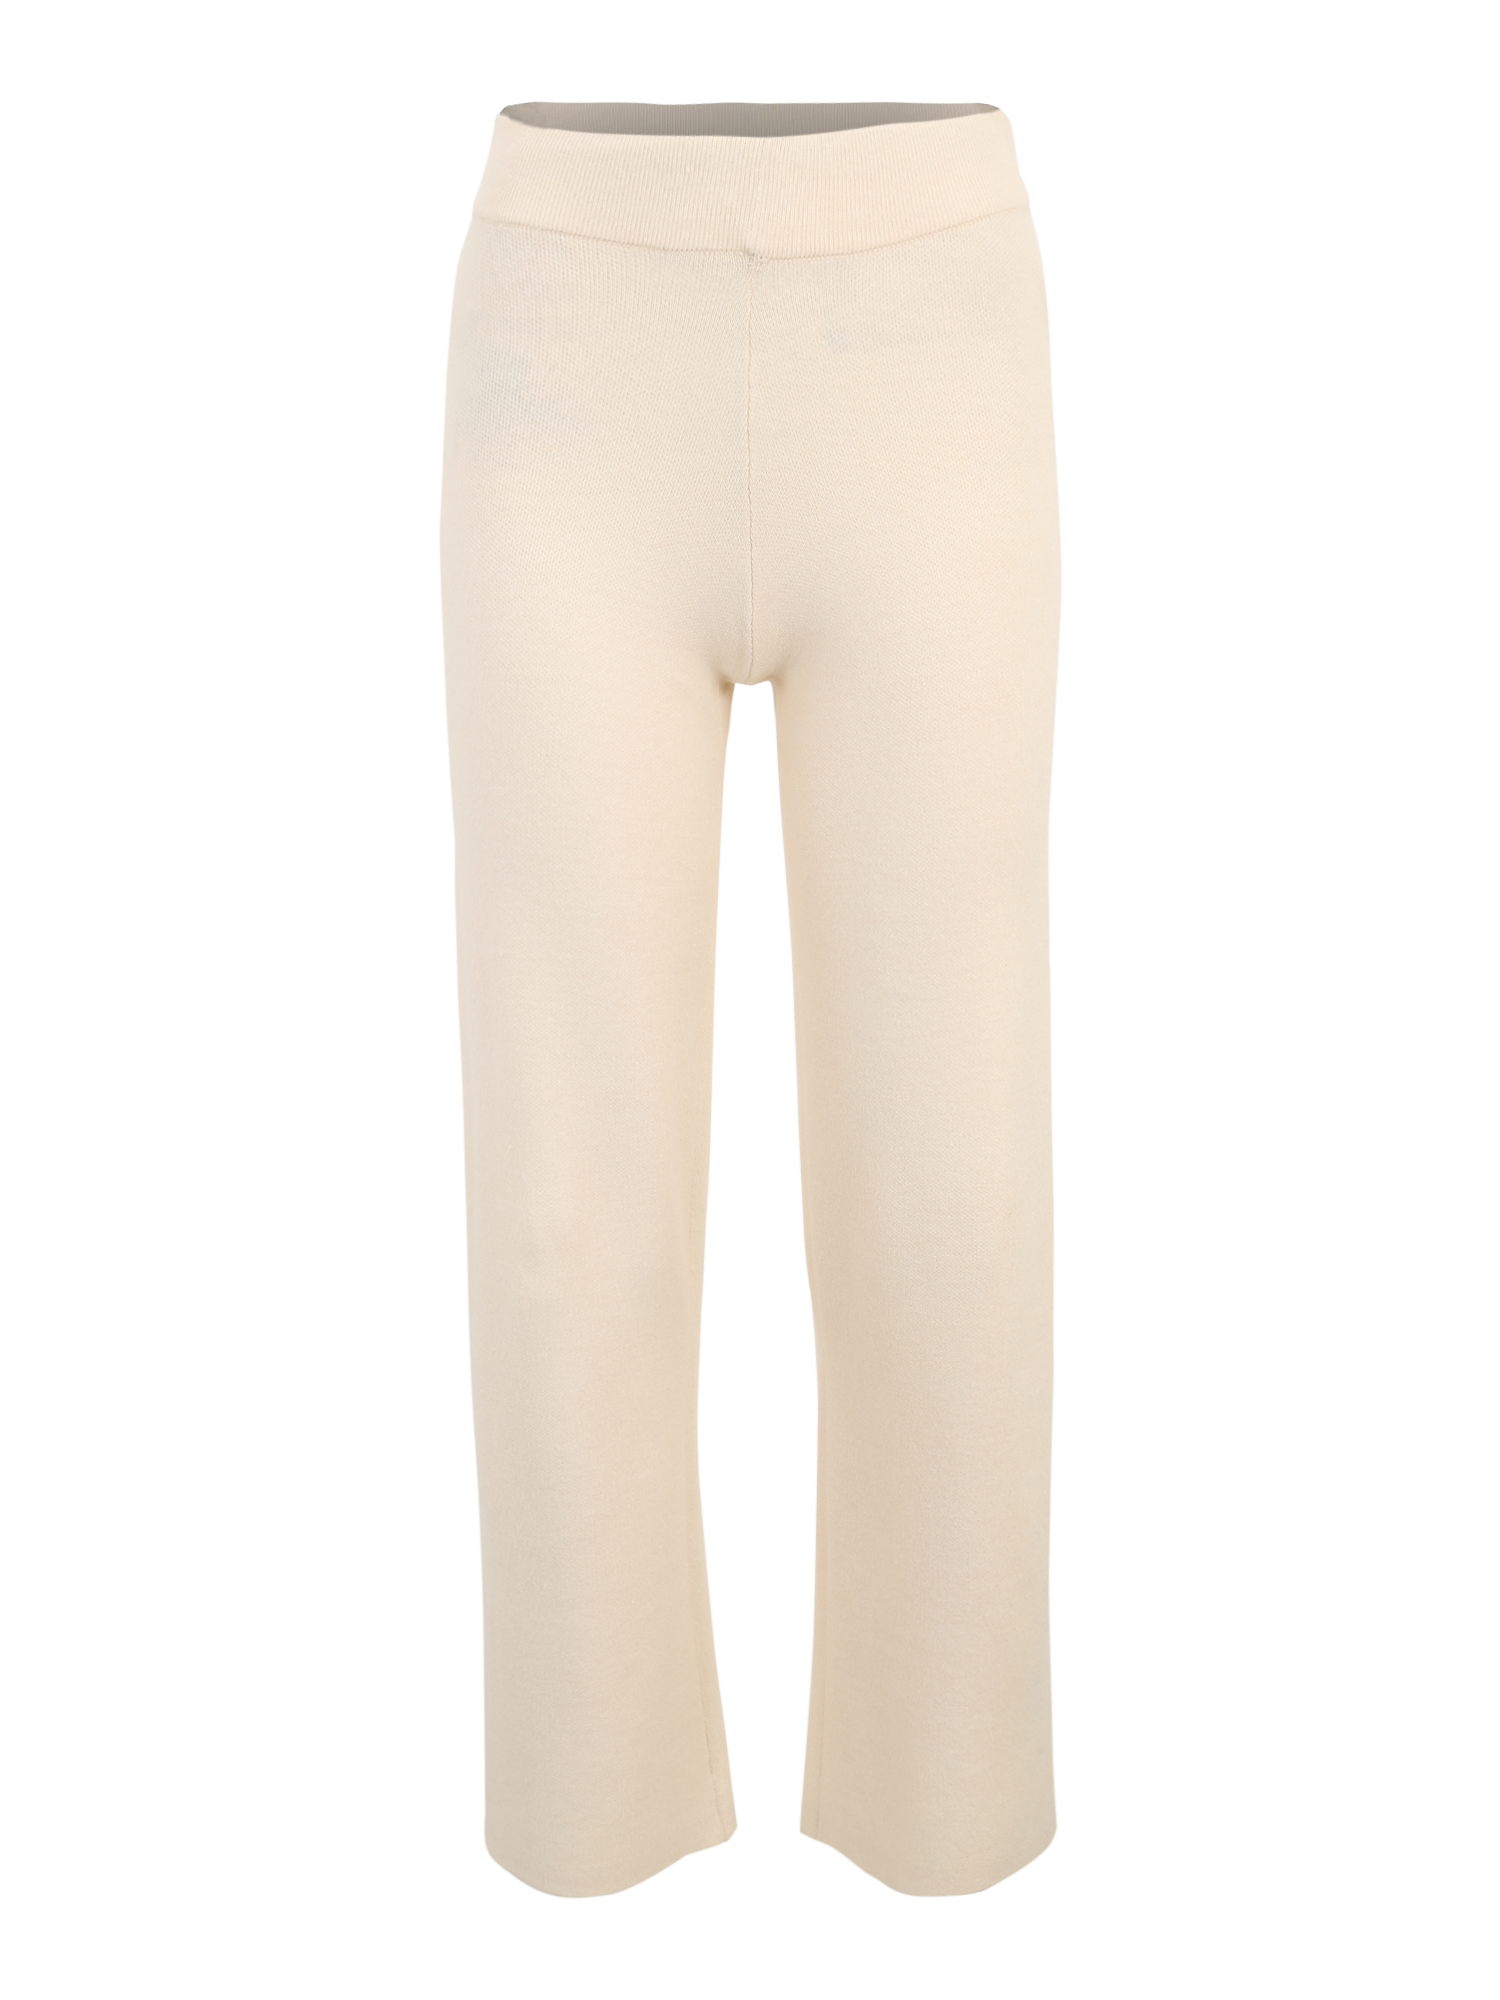 LqHWZ Bardziej zrównoważony Vero Moda Petite Spodnie GOLD NEEDLE w kolorze Szarobeżowym 